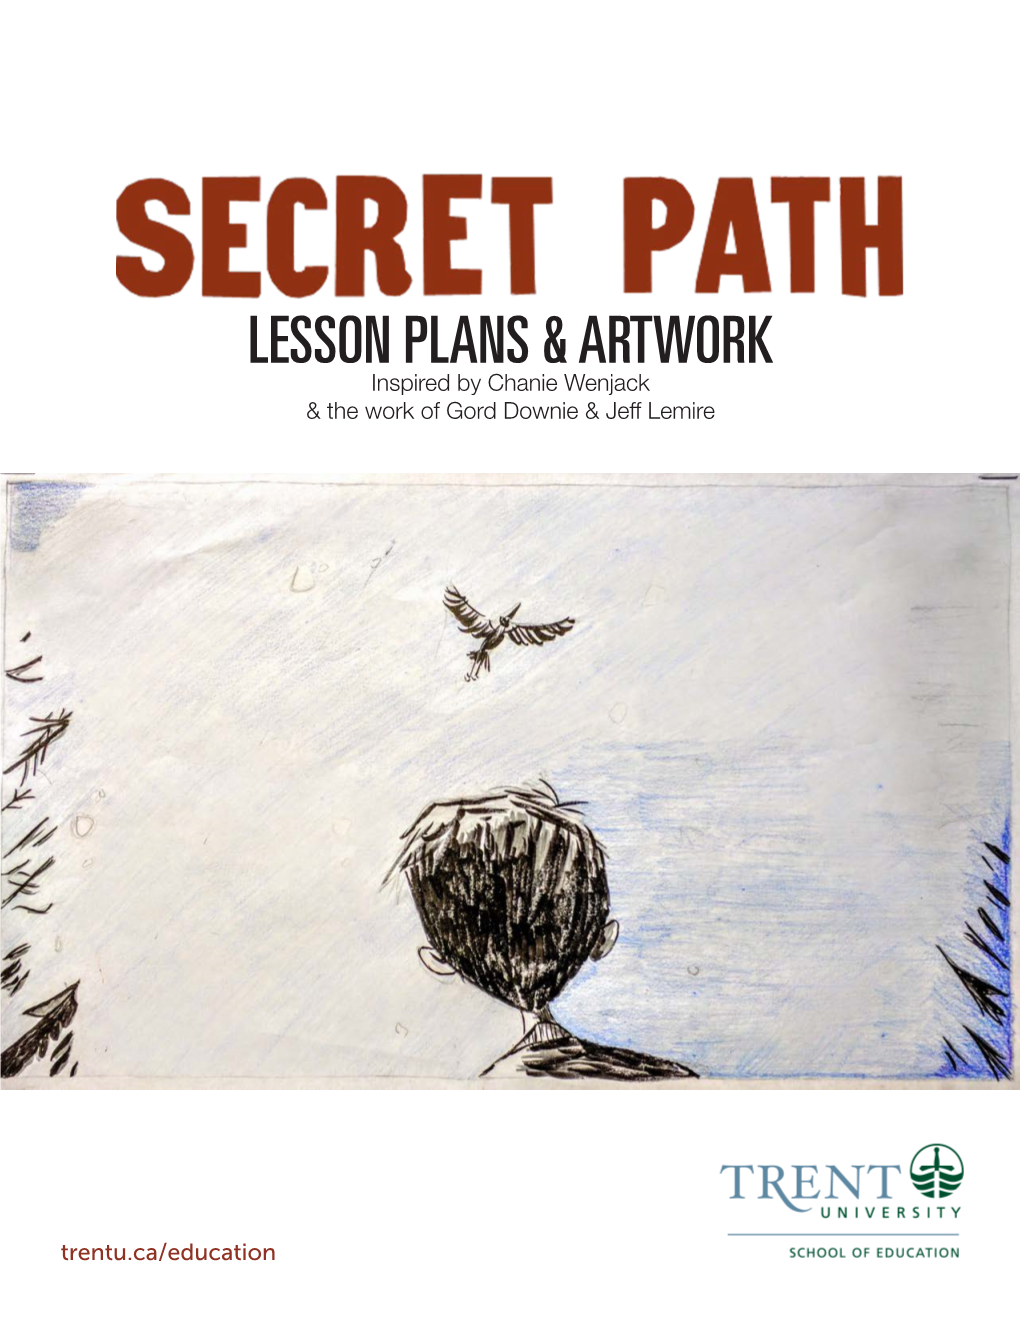 Secret Path: Lesson Plans and Artwork